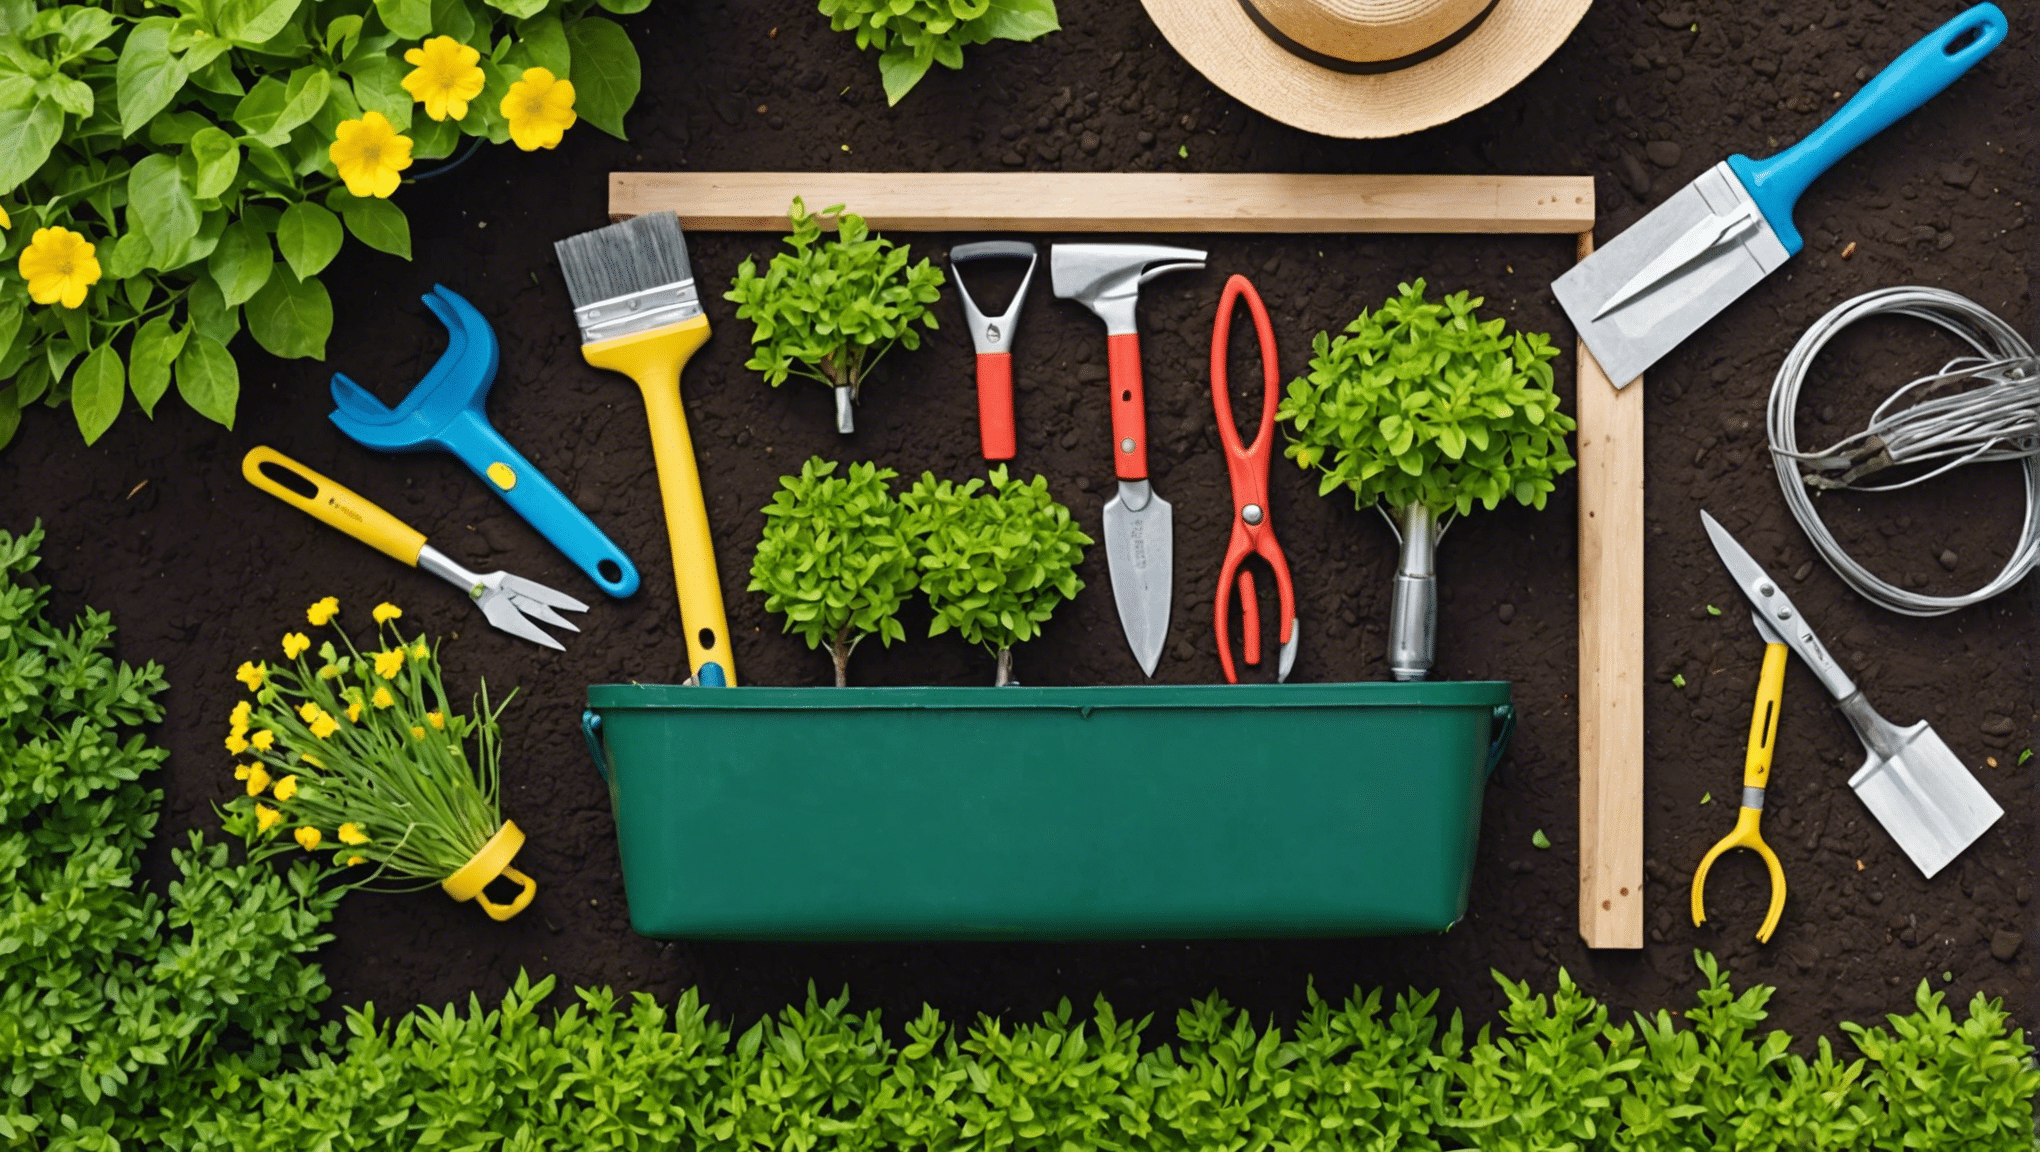 objevte nepostradatelné položky, které si můžete zabalit do tašky na zahradnické nářadí, a udělejte si tak práci na zahradě zábavnější a efektivnější. od zahradnických nůžek po rukavice, zjistěte, co potřebujete mít pro úspěšné zahradničení.